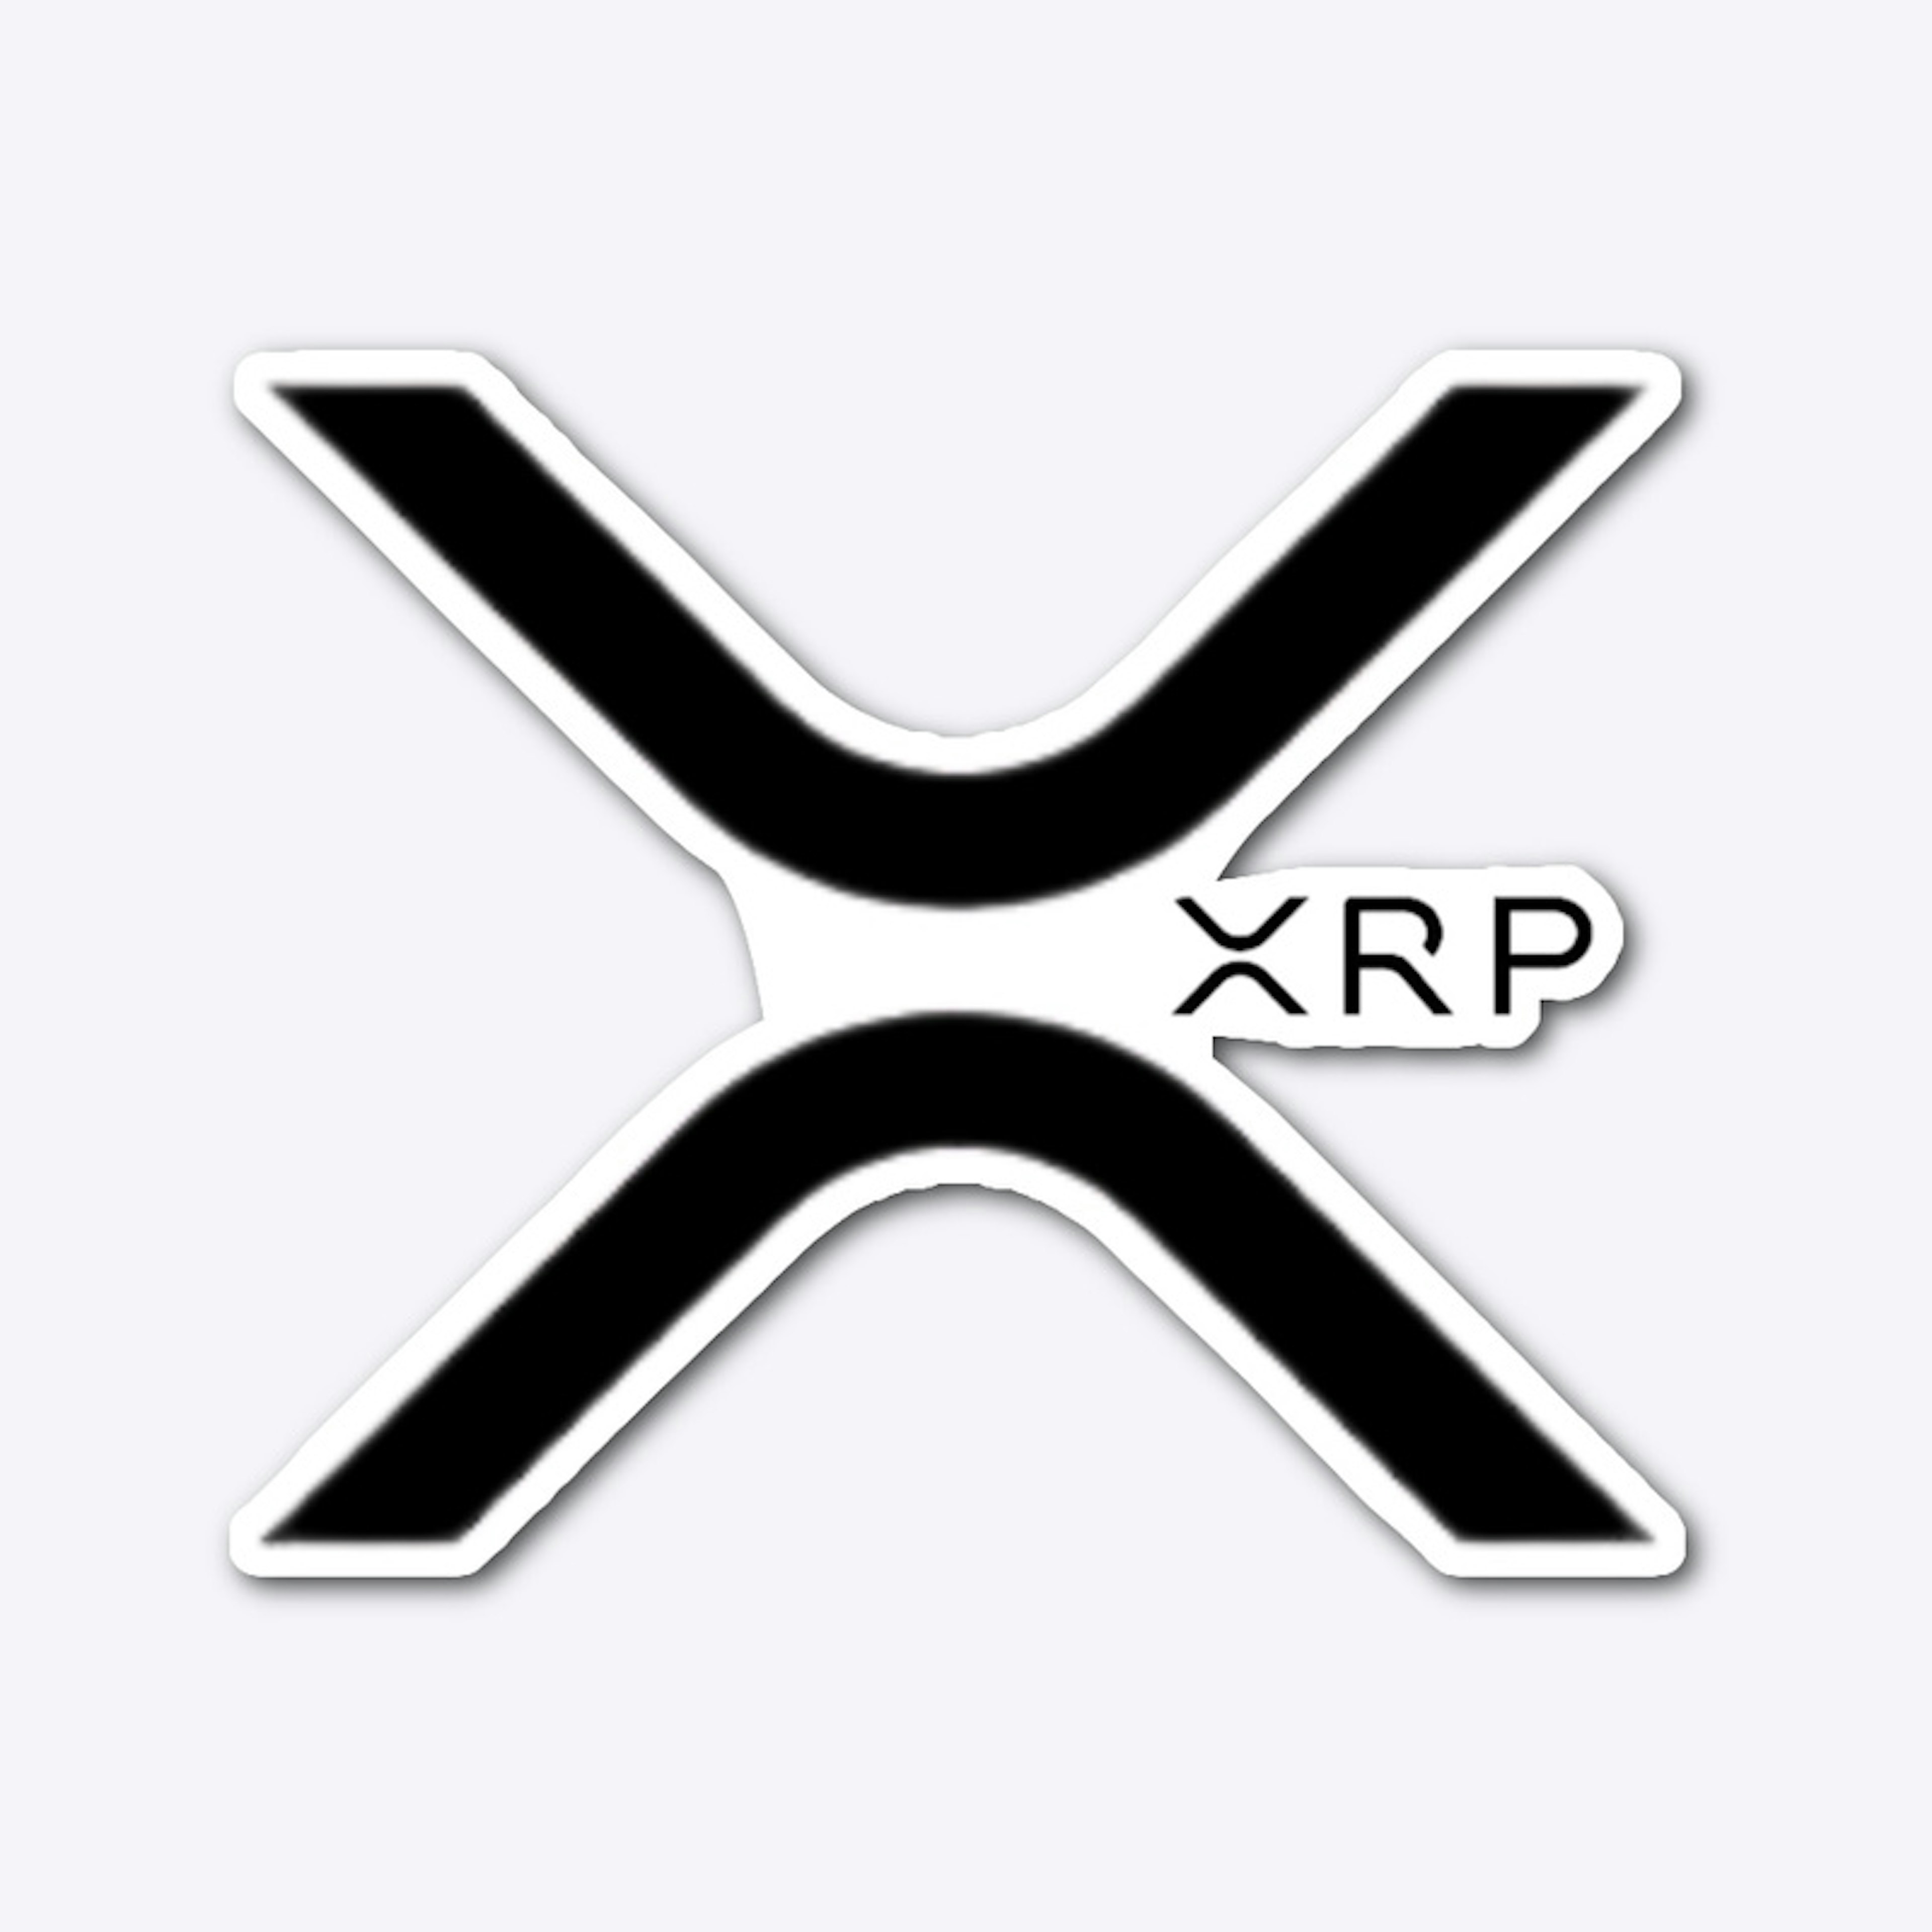 Die Cut Sticker XRP (1)